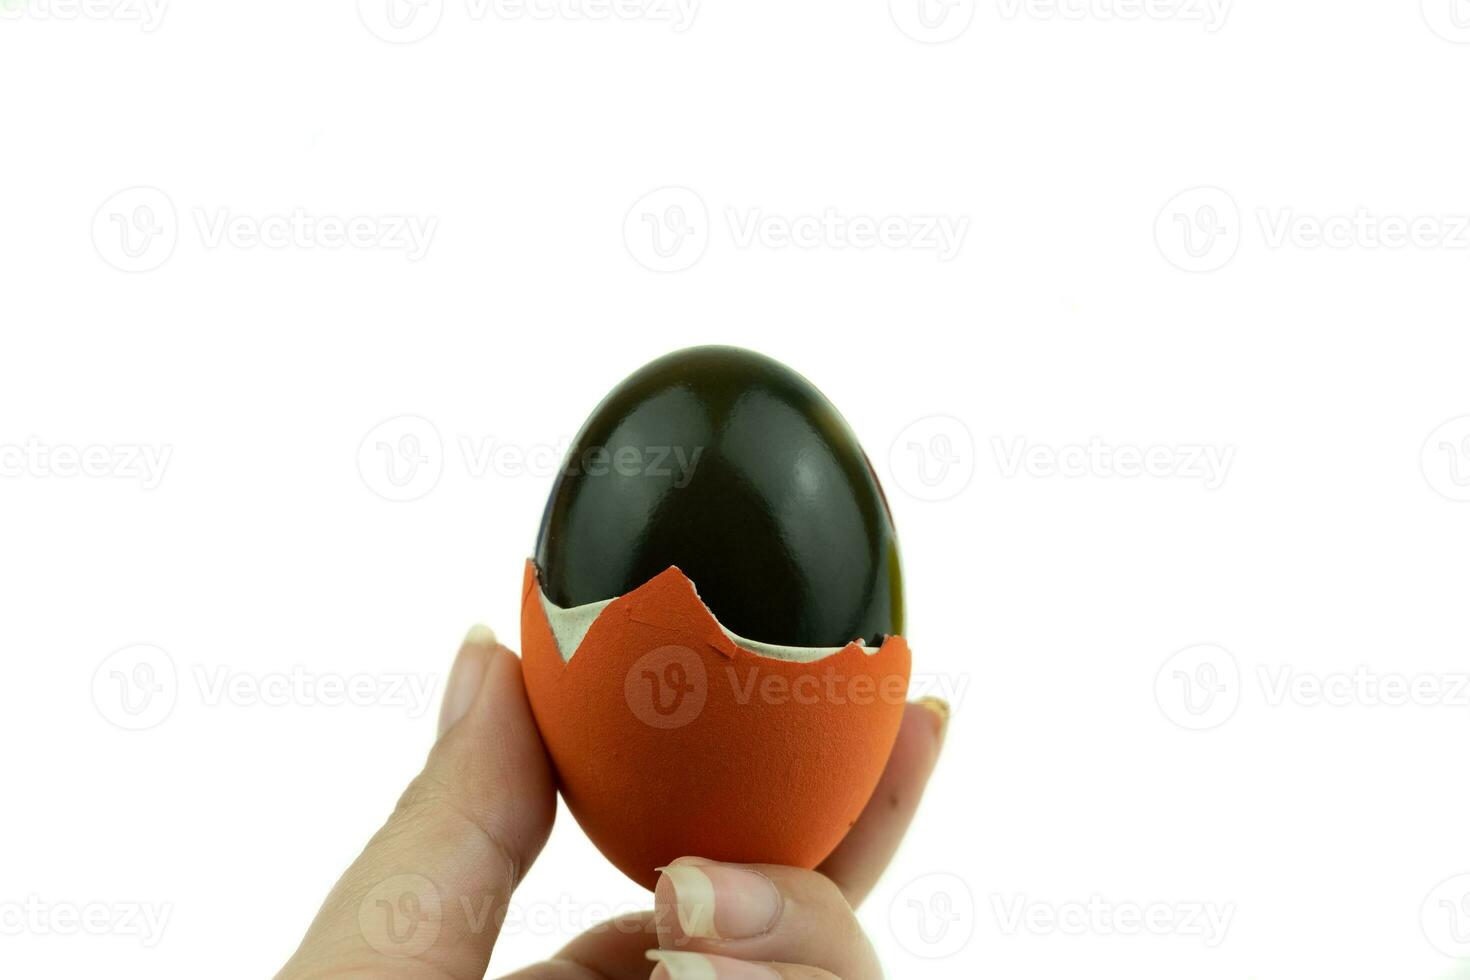 l'uovo del secolo o l'uovo conservato sono uova imbevute di calce viva che trasforma l'albume in verde o nero con il cibo tradizionale asiatico fatto con pollo d'anatra o uova di quaglia foto